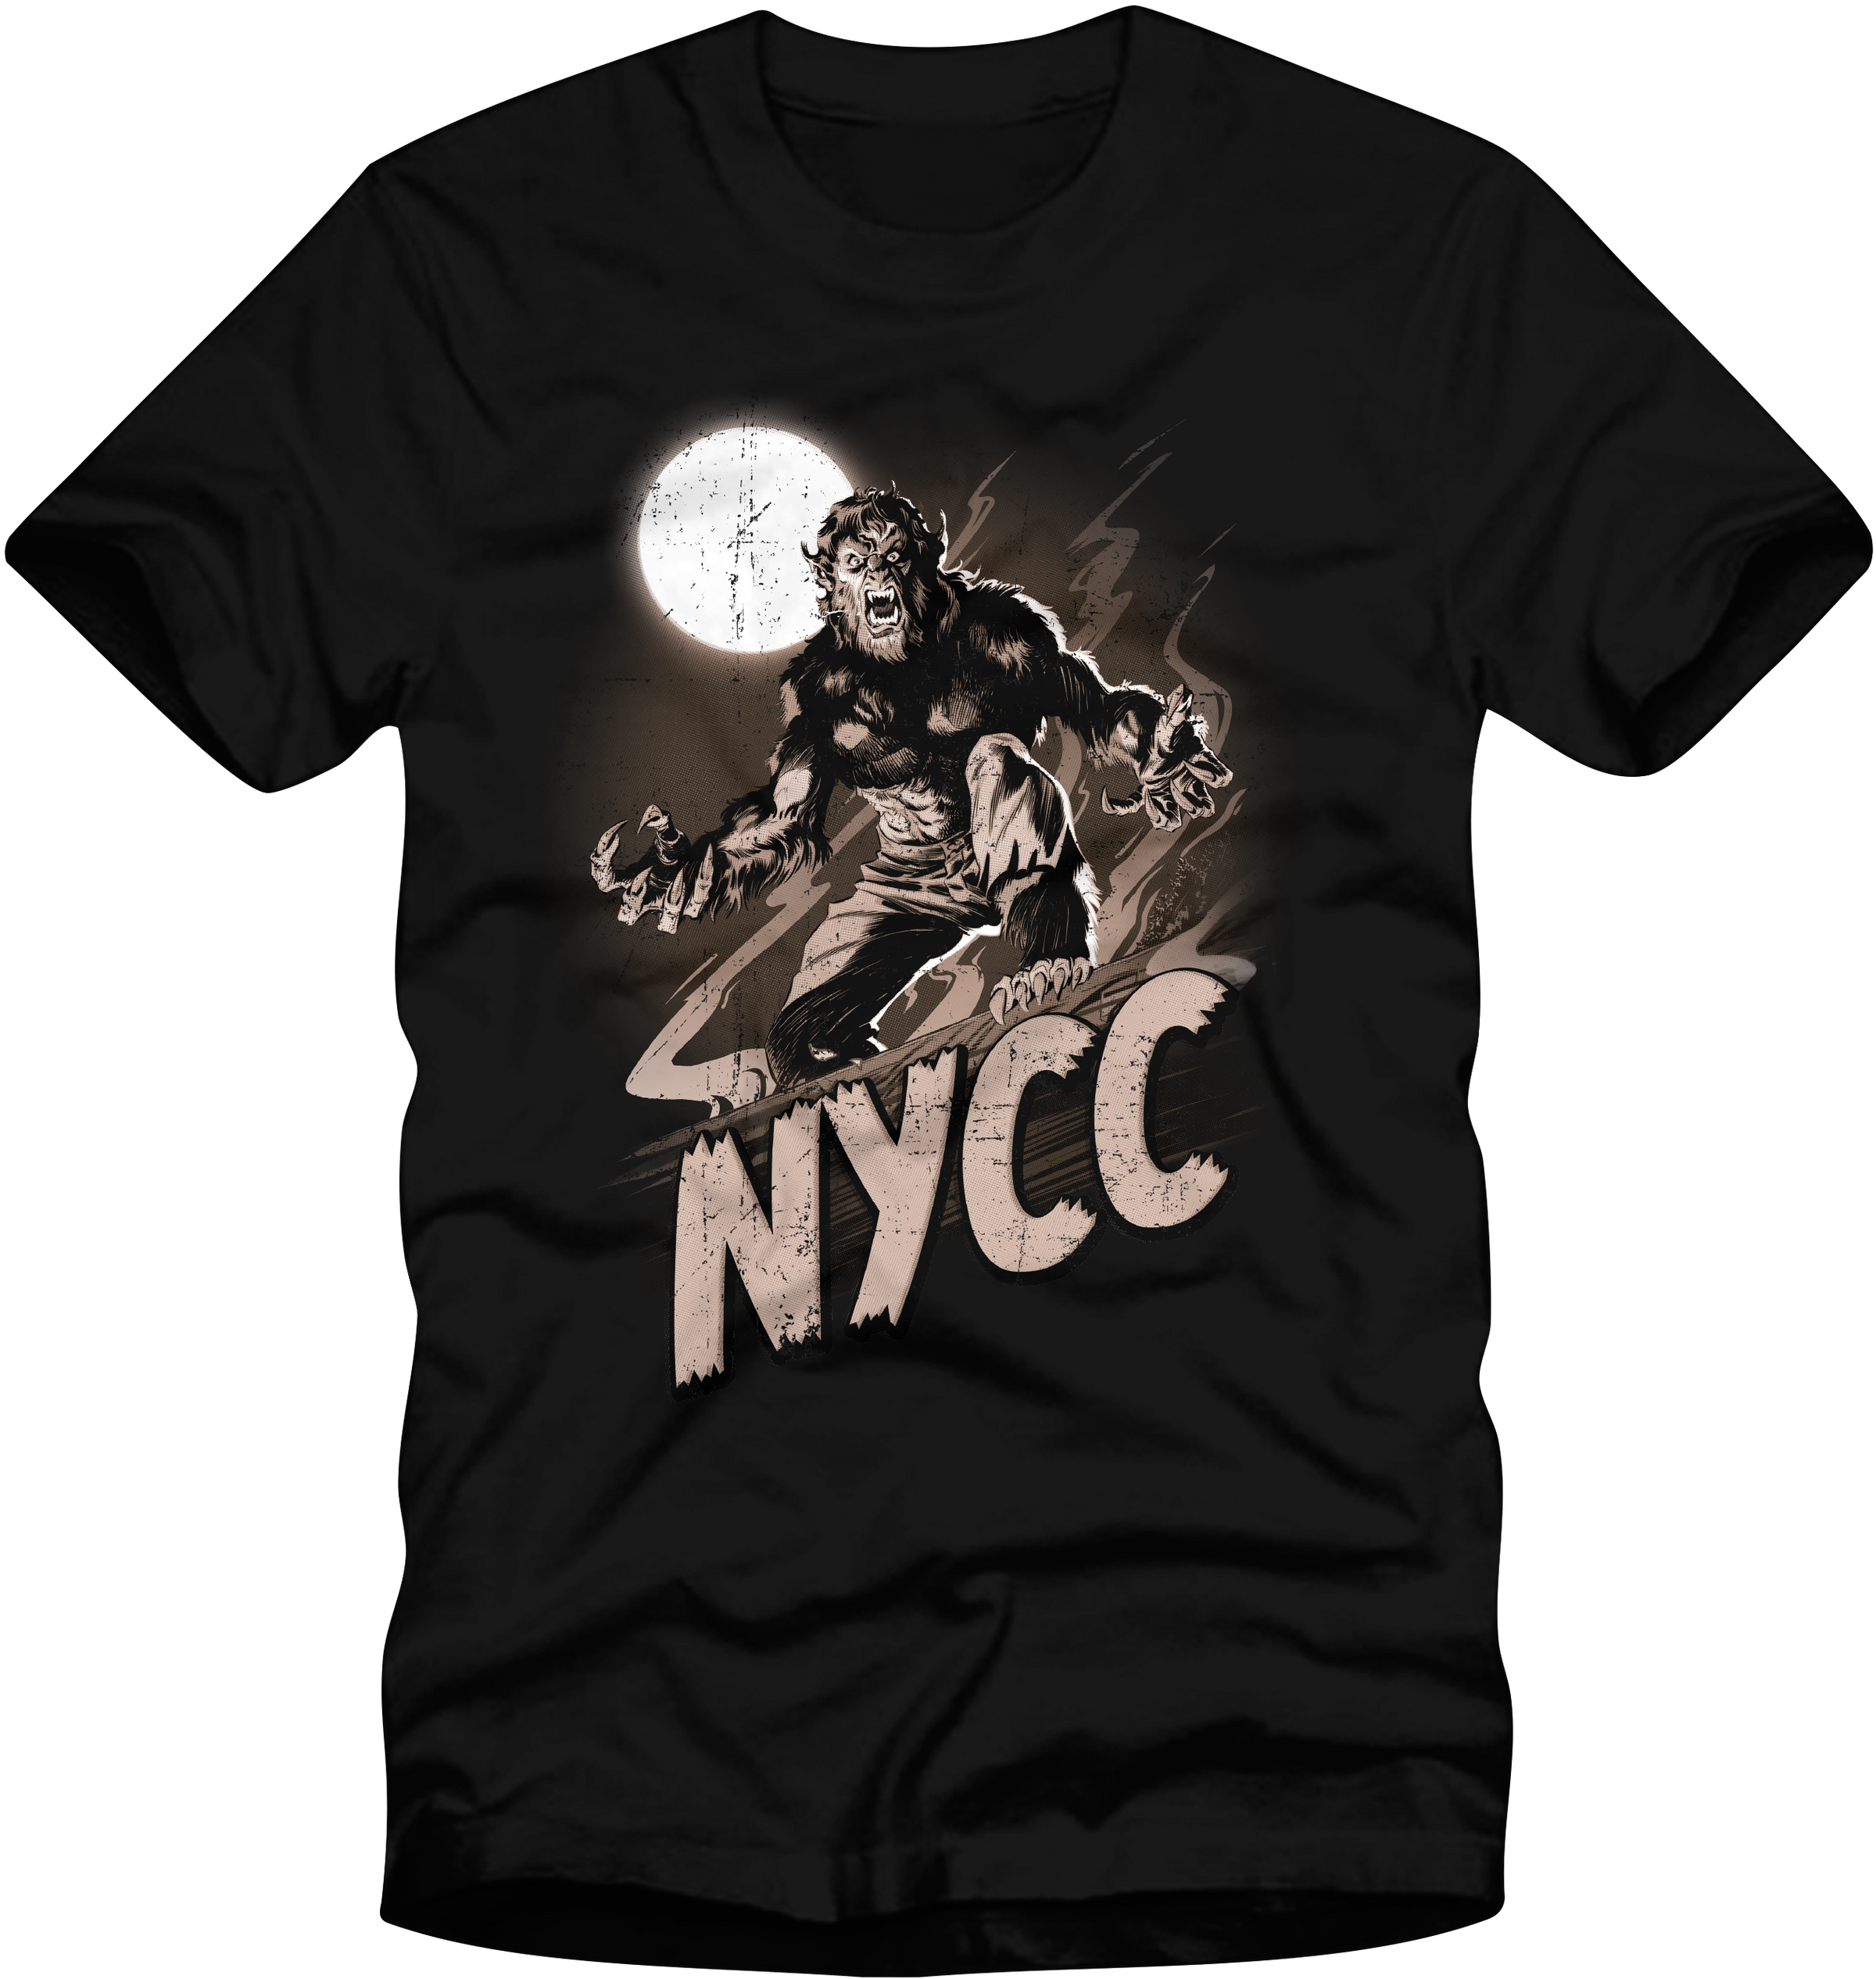 Men's Marvel Werewolf by Night Moon Werewolf Poster T-Shirt